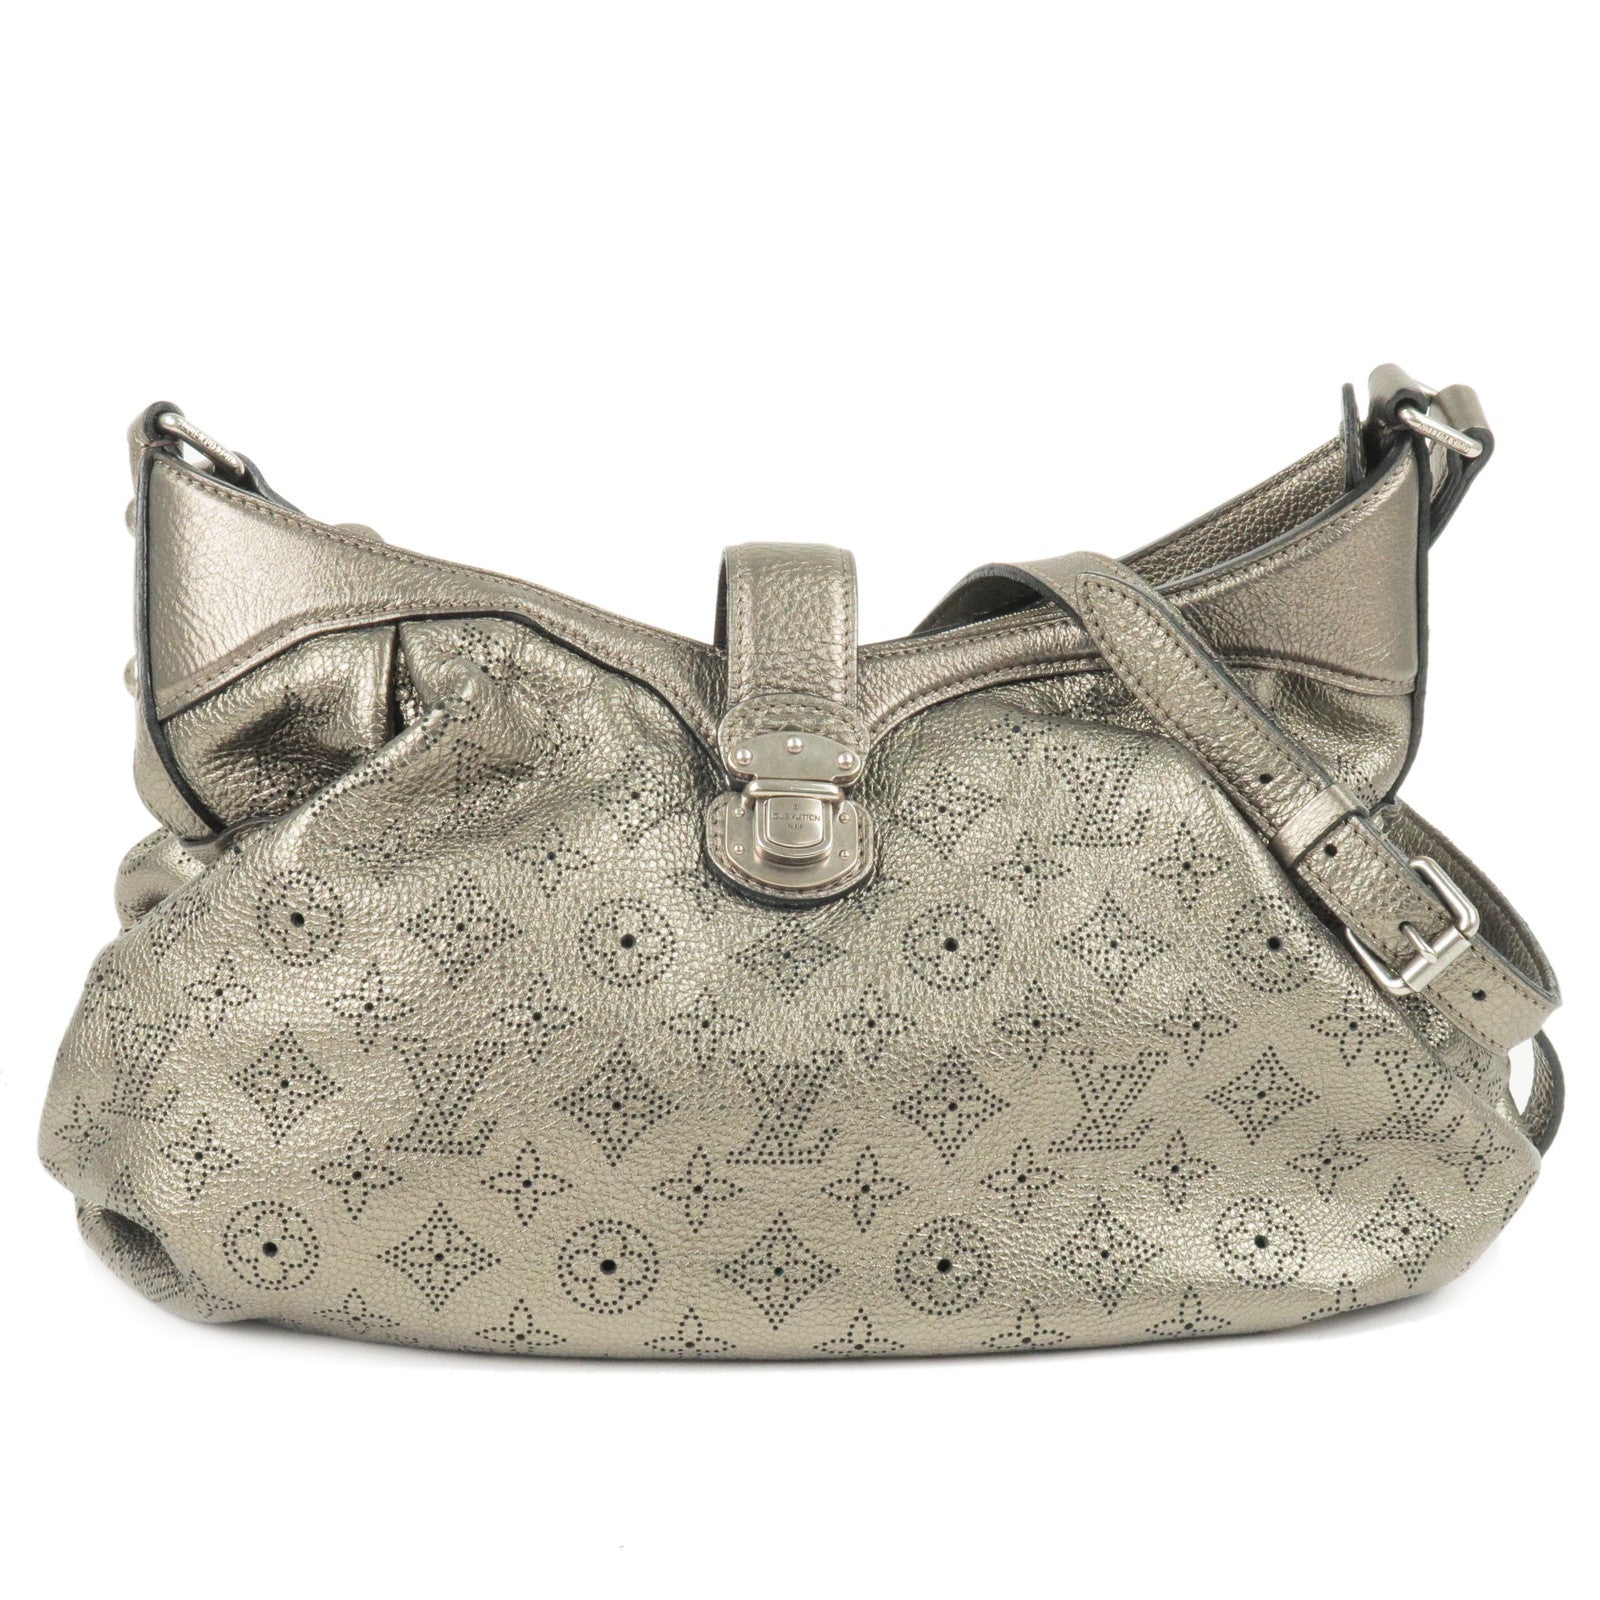 Louis Vuitton Mahina Shoulder Bags for Women